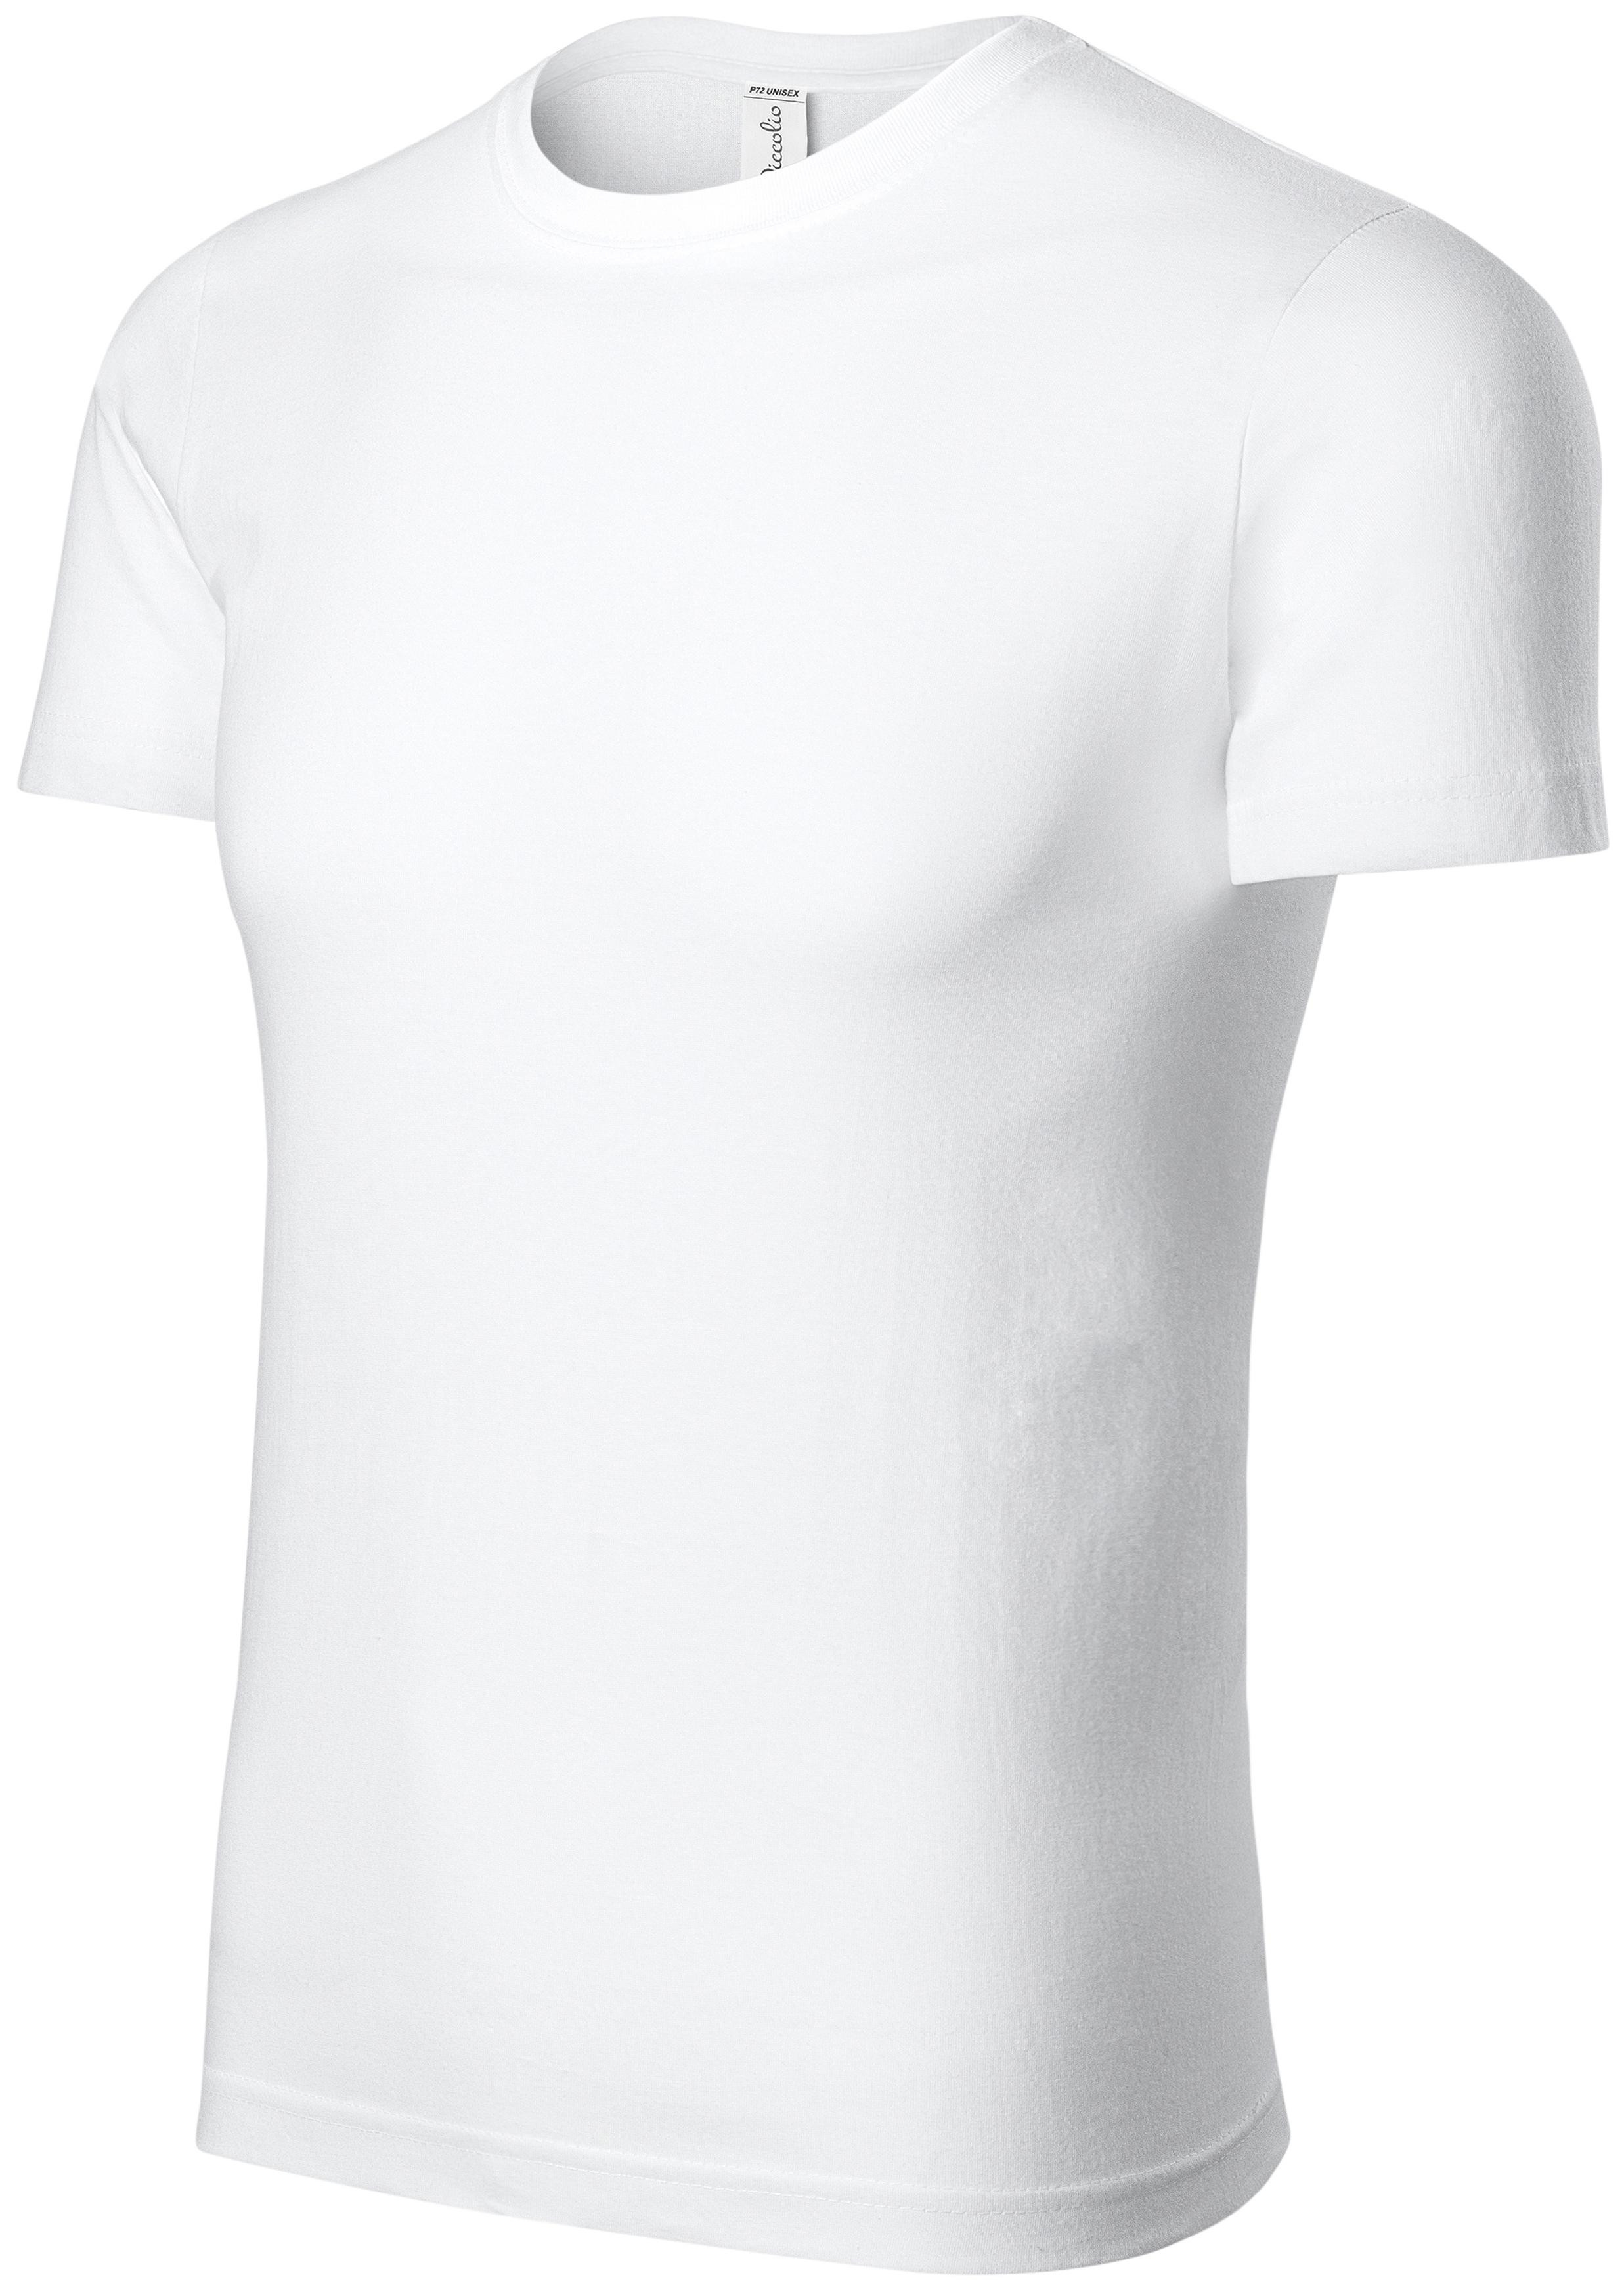 Detské ľahké tričko, biela, 122cm / 6rokov